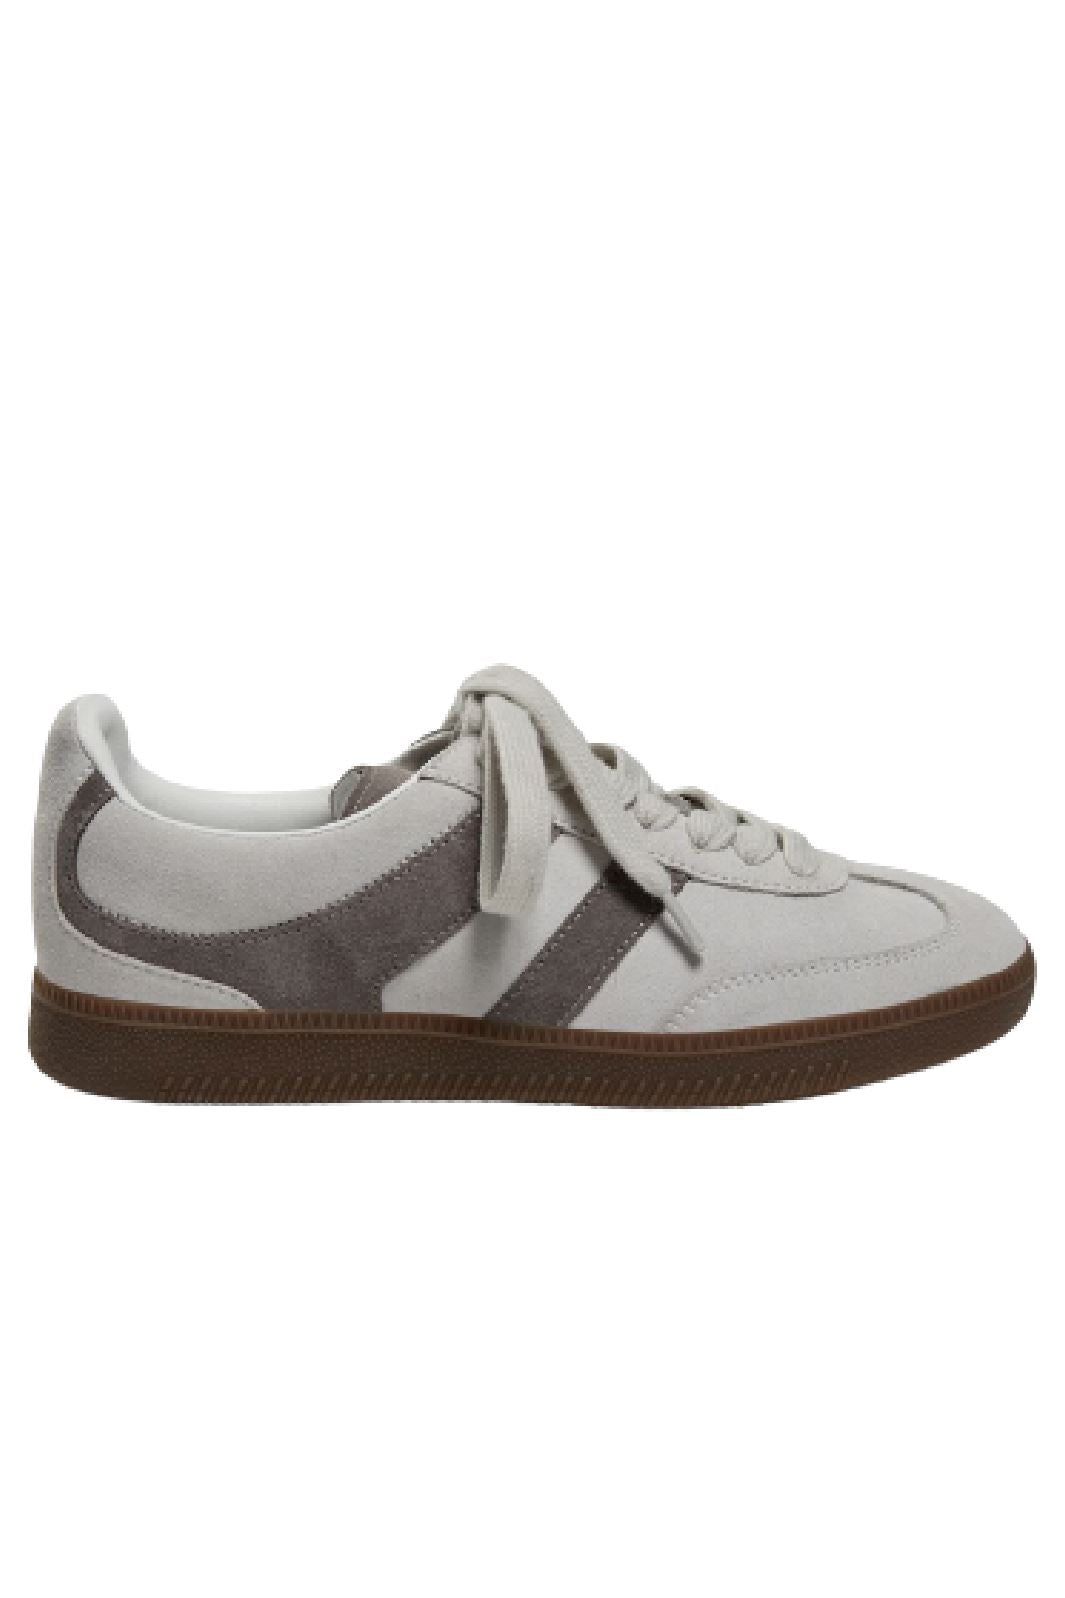 Sofie Schnoor - T425 Sneaker - Grey Sneakers 